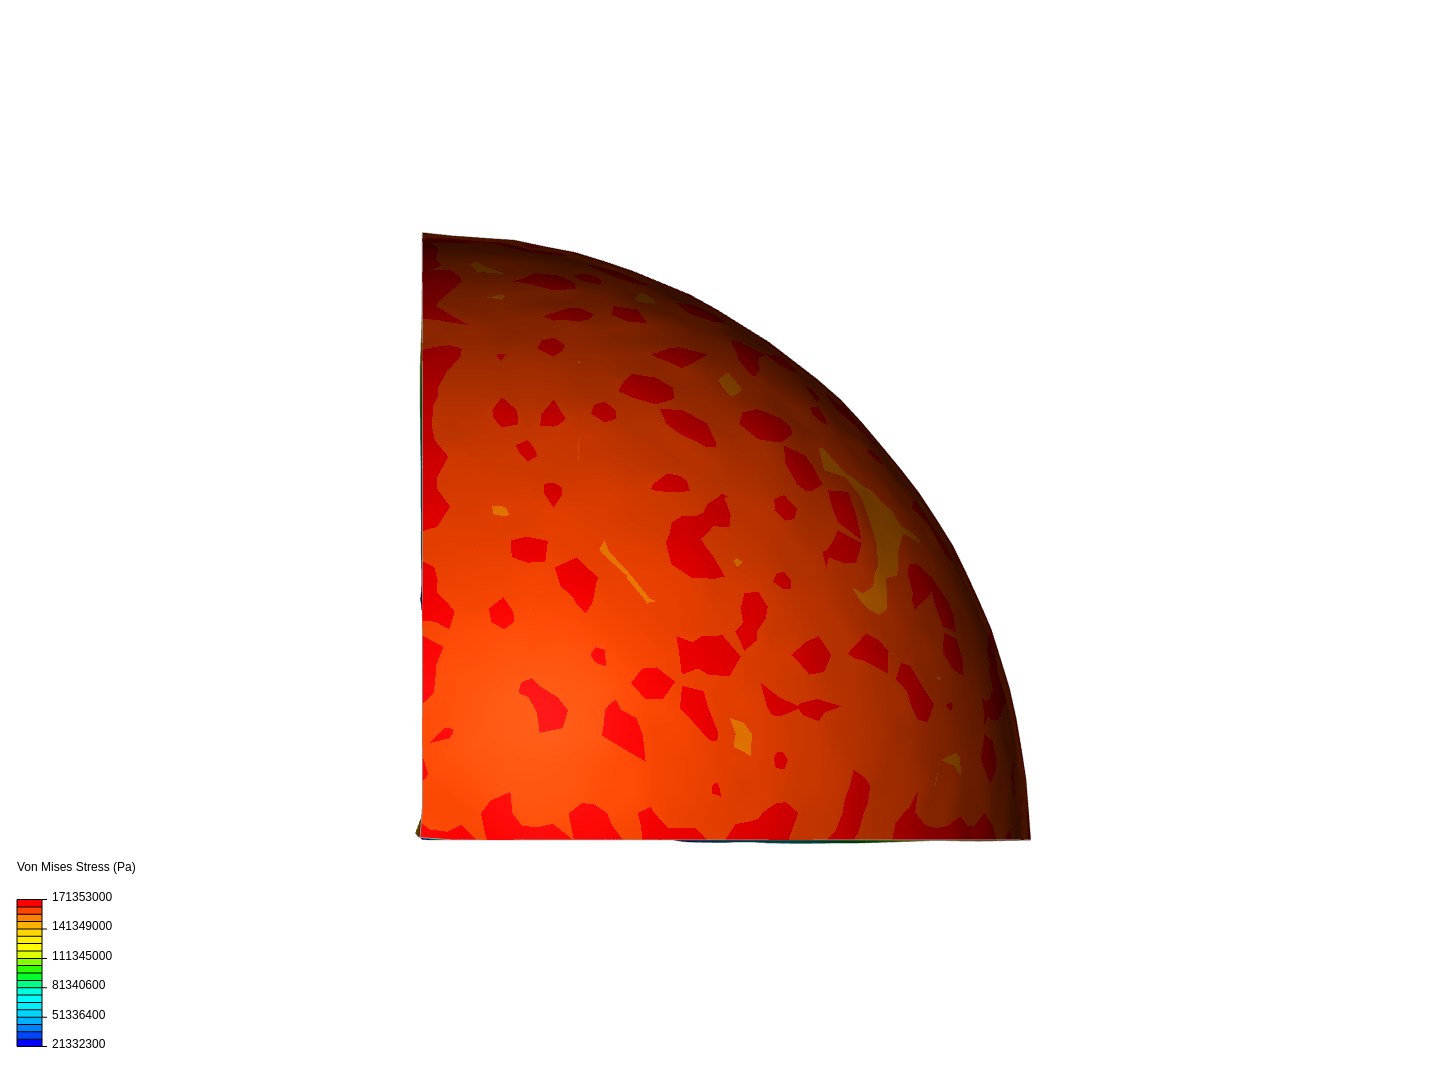 Spherical Pressure vessel image